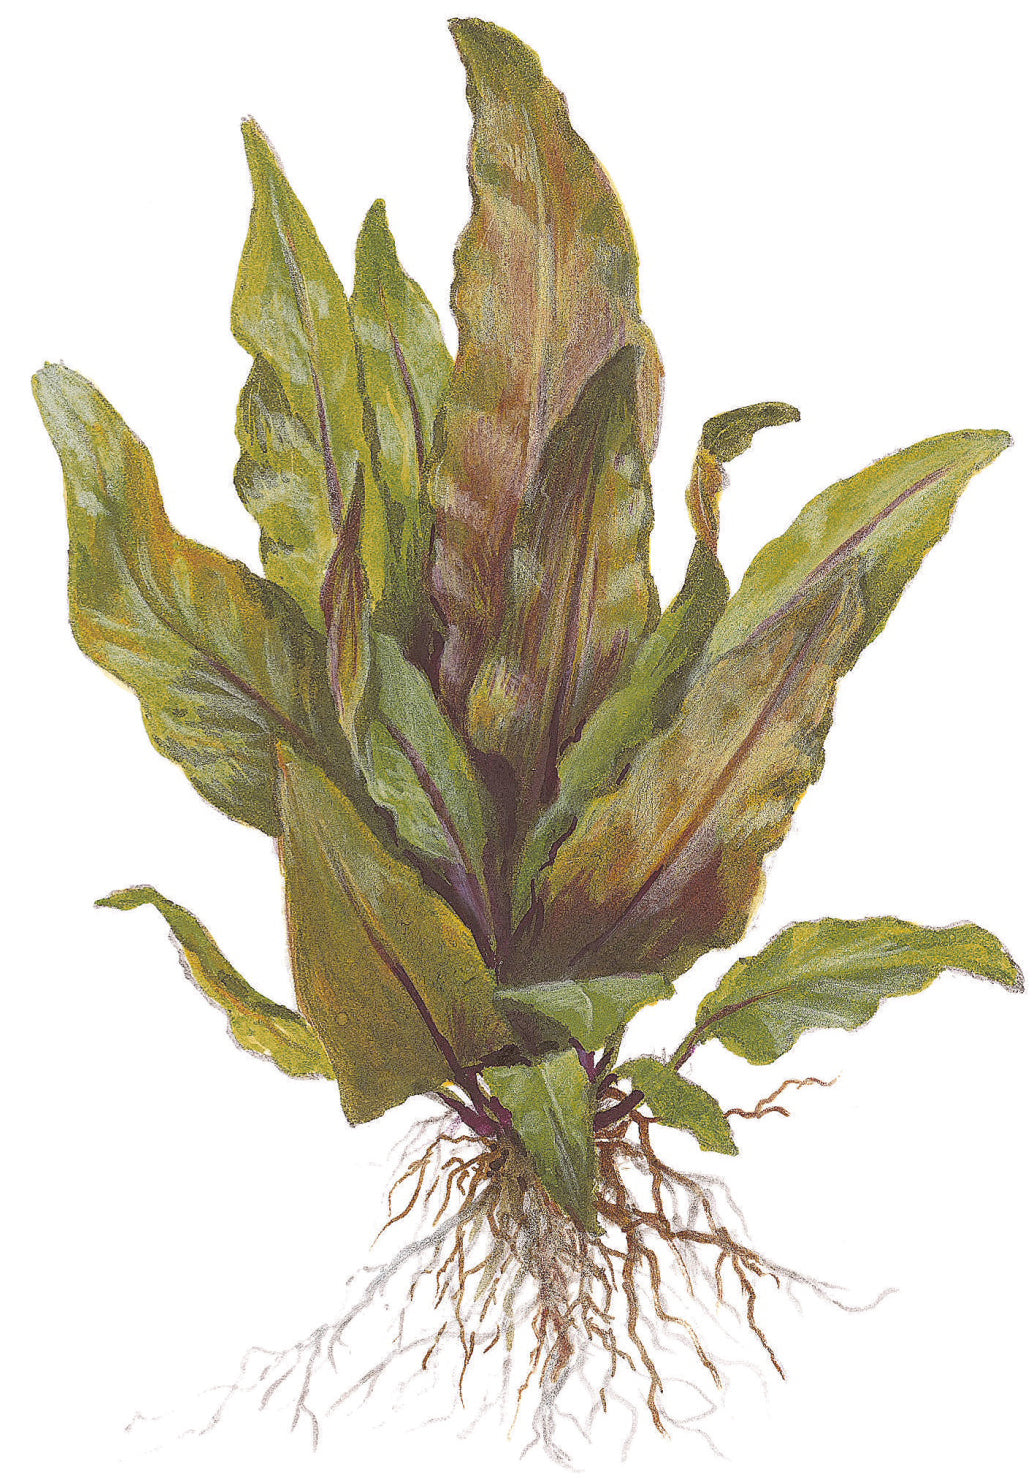 Cryptocoryne undulata "broad leaves"